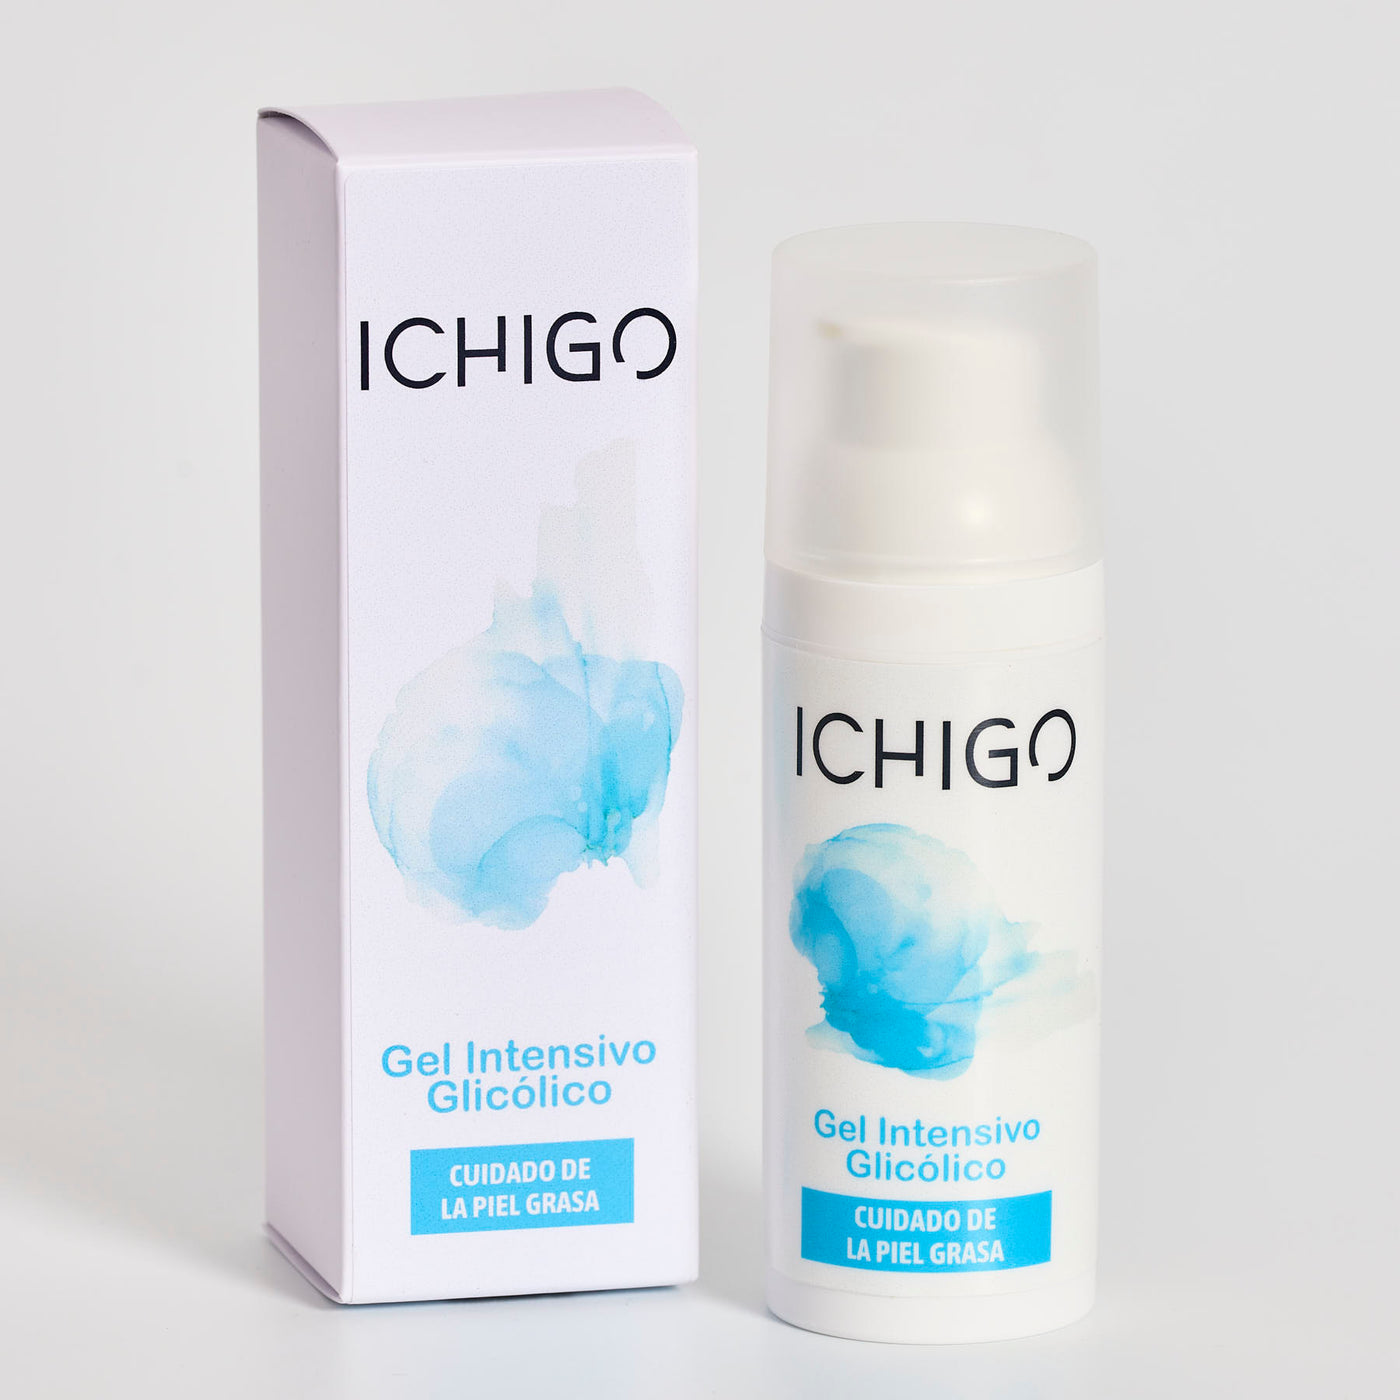 ICHIGO Gel Intensivo Glicólico - Cuidado de la Piel Grasa